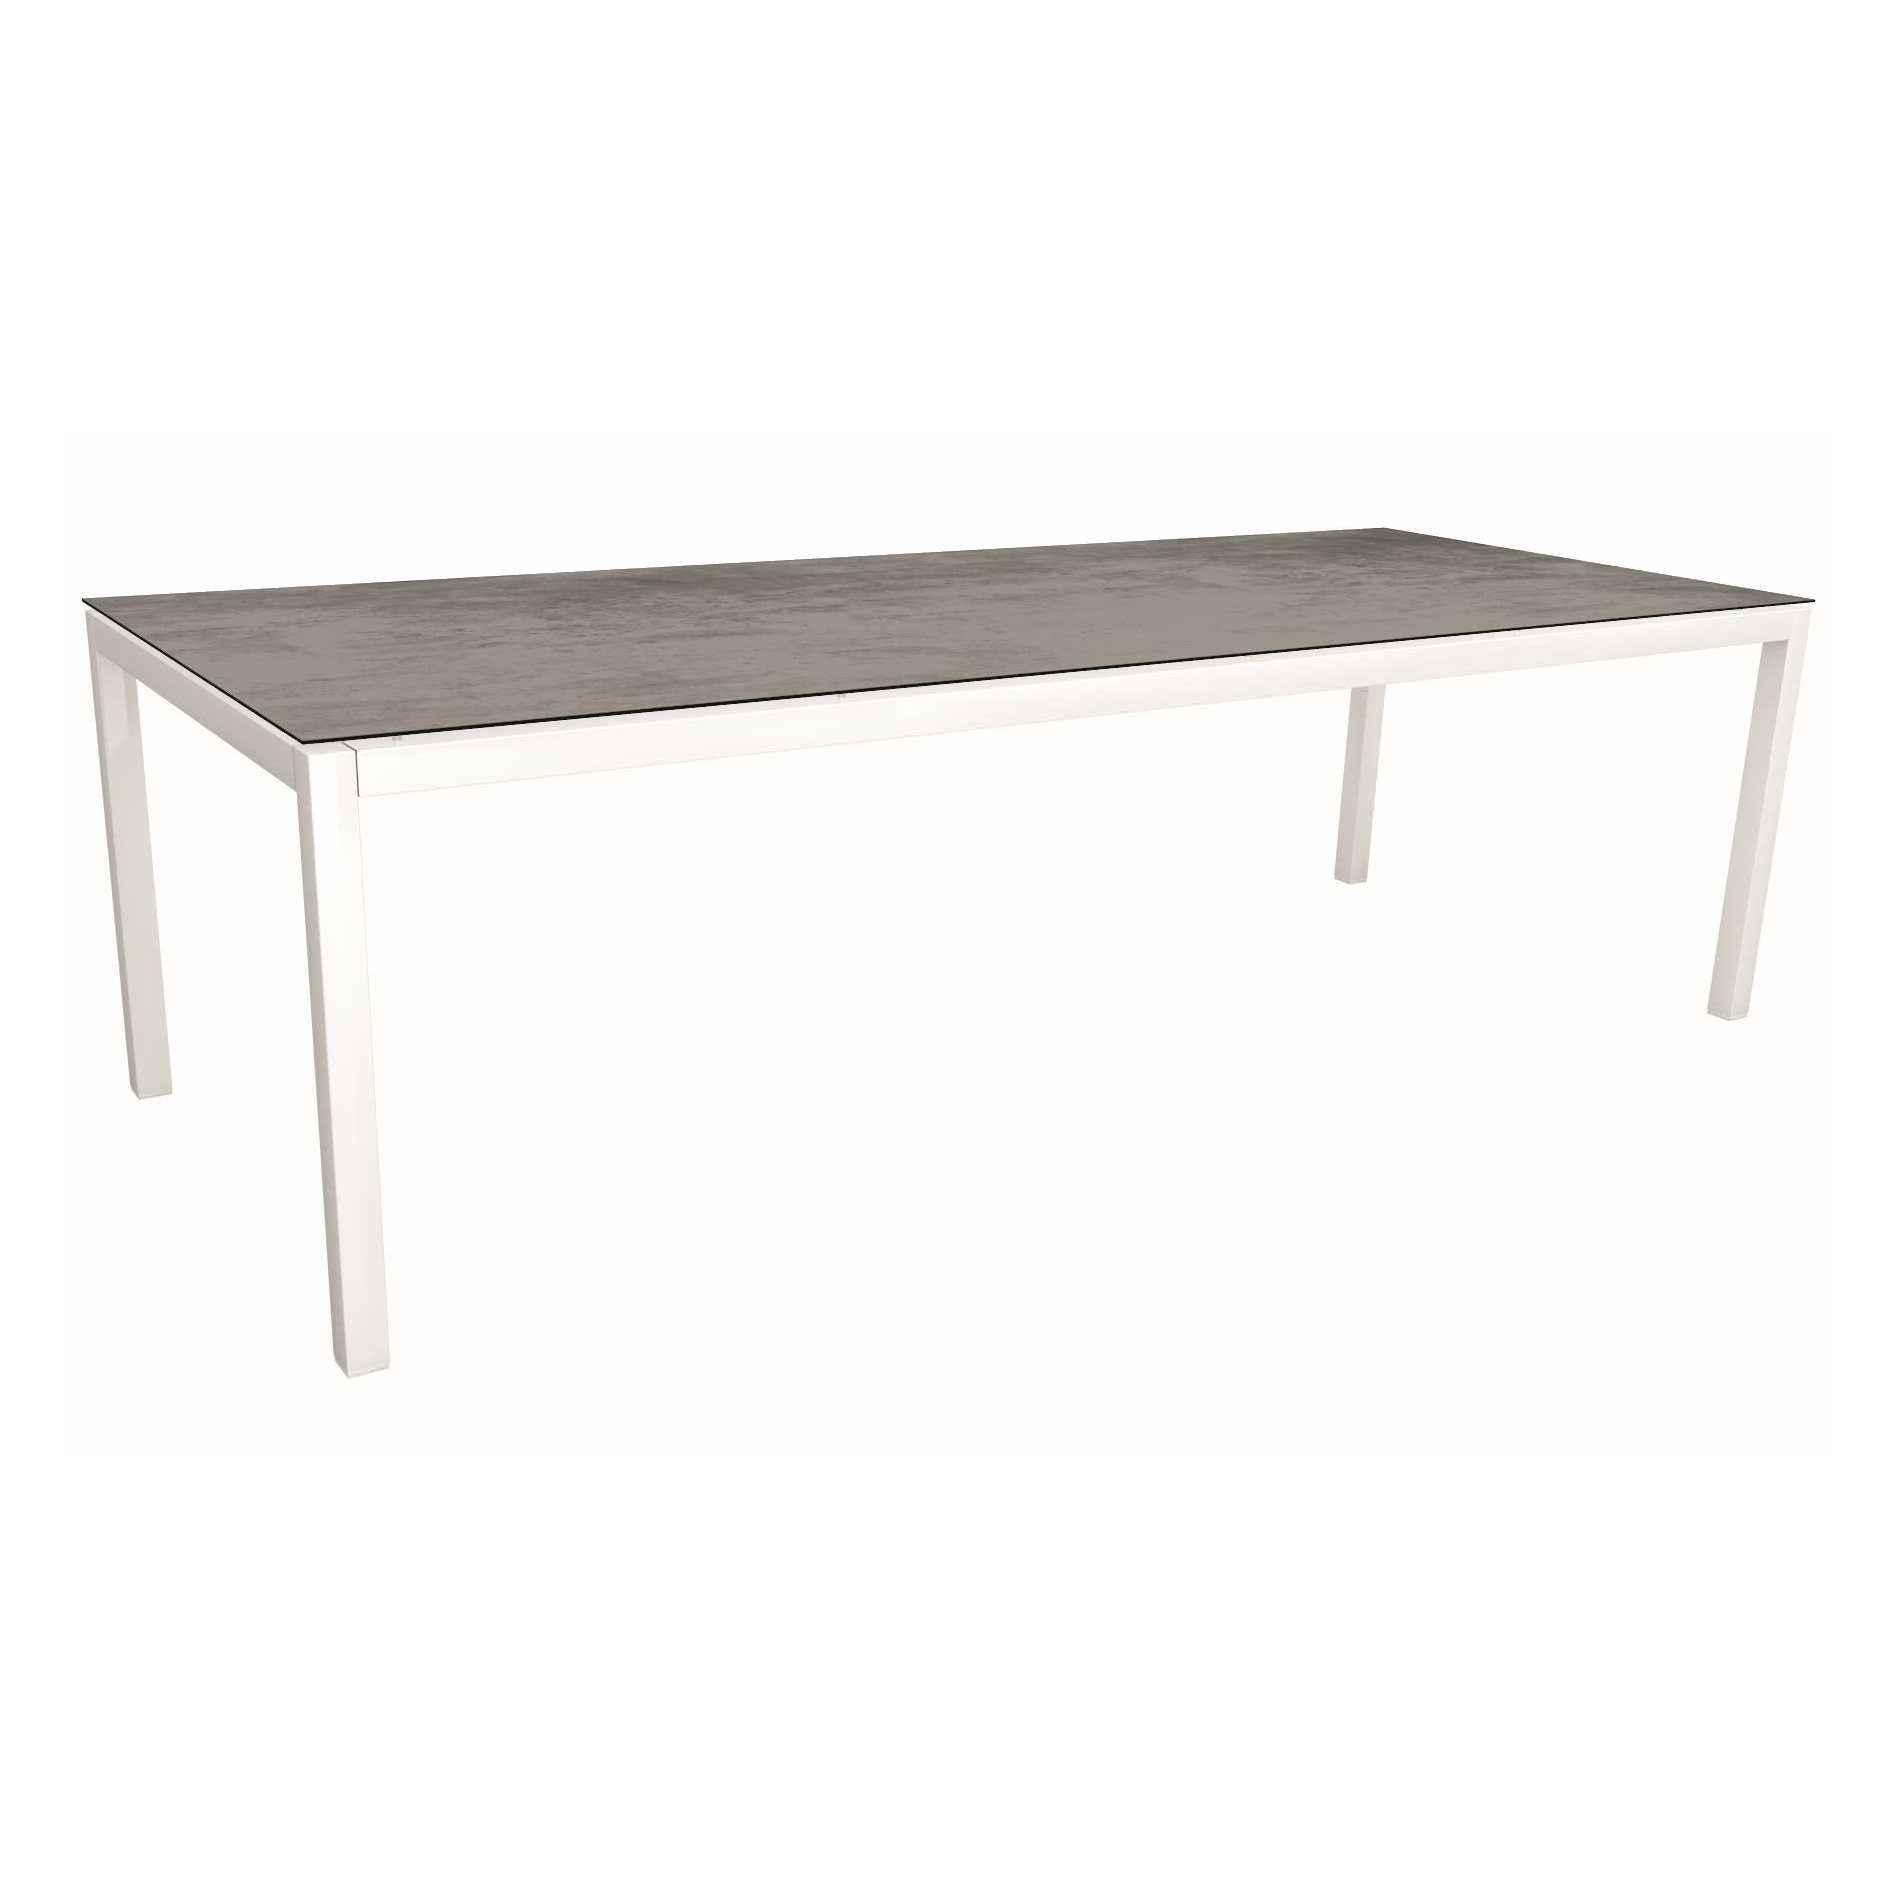 Stern Tischsystem, Gestell Aluminium weiß, Tischplatte HPL Zement, Größe: 250x100 cm